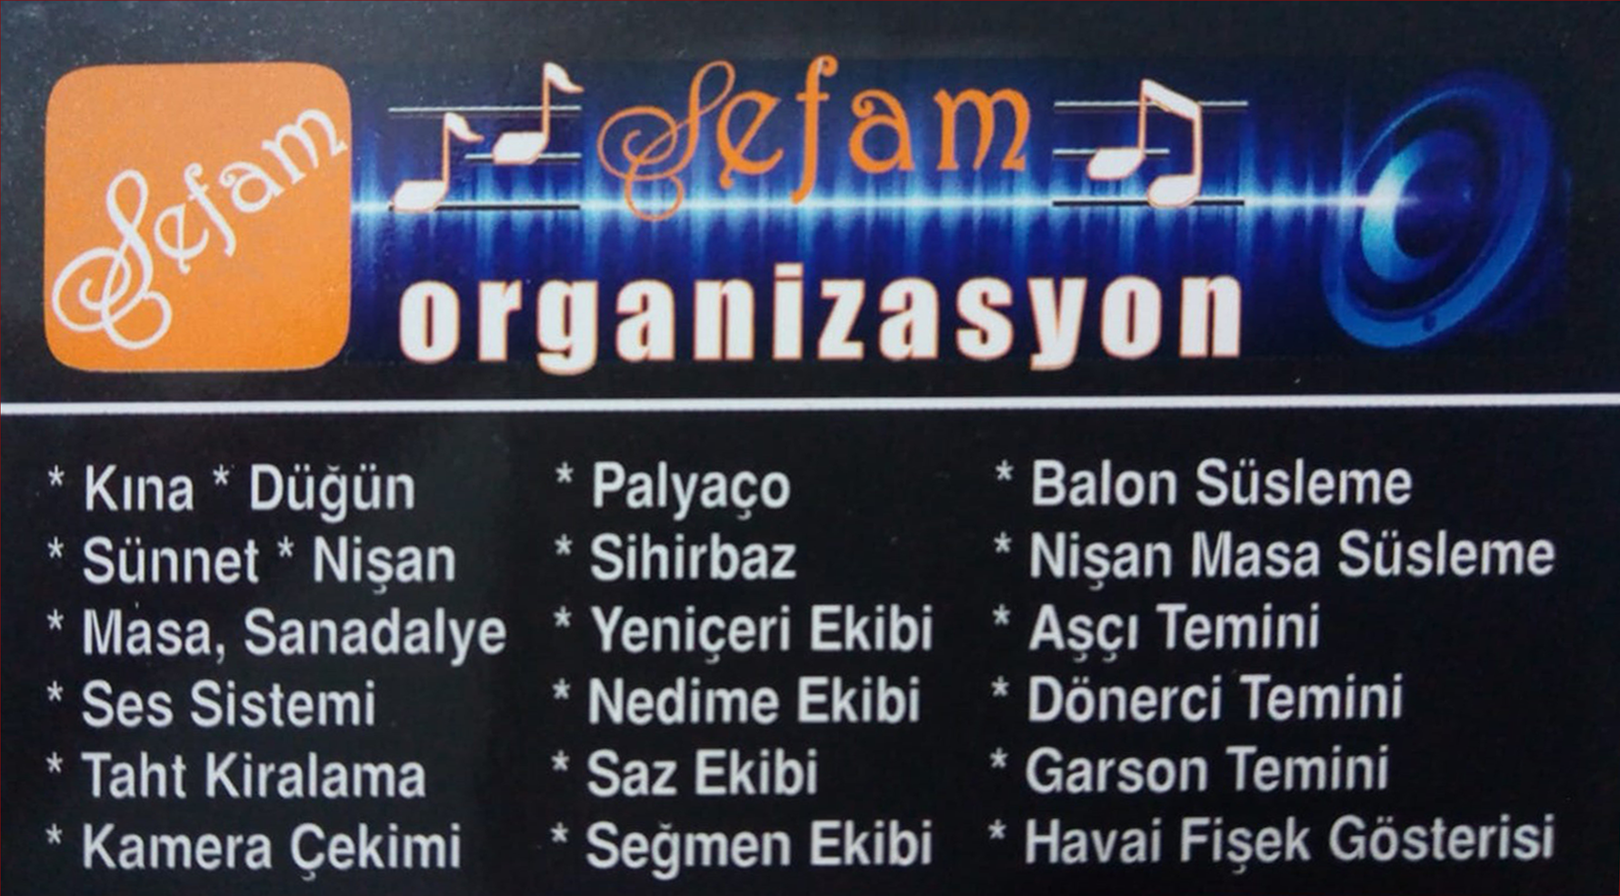 Sefam Organizasyon Ankara 0536 474 94 46 - 0552 474 94 46